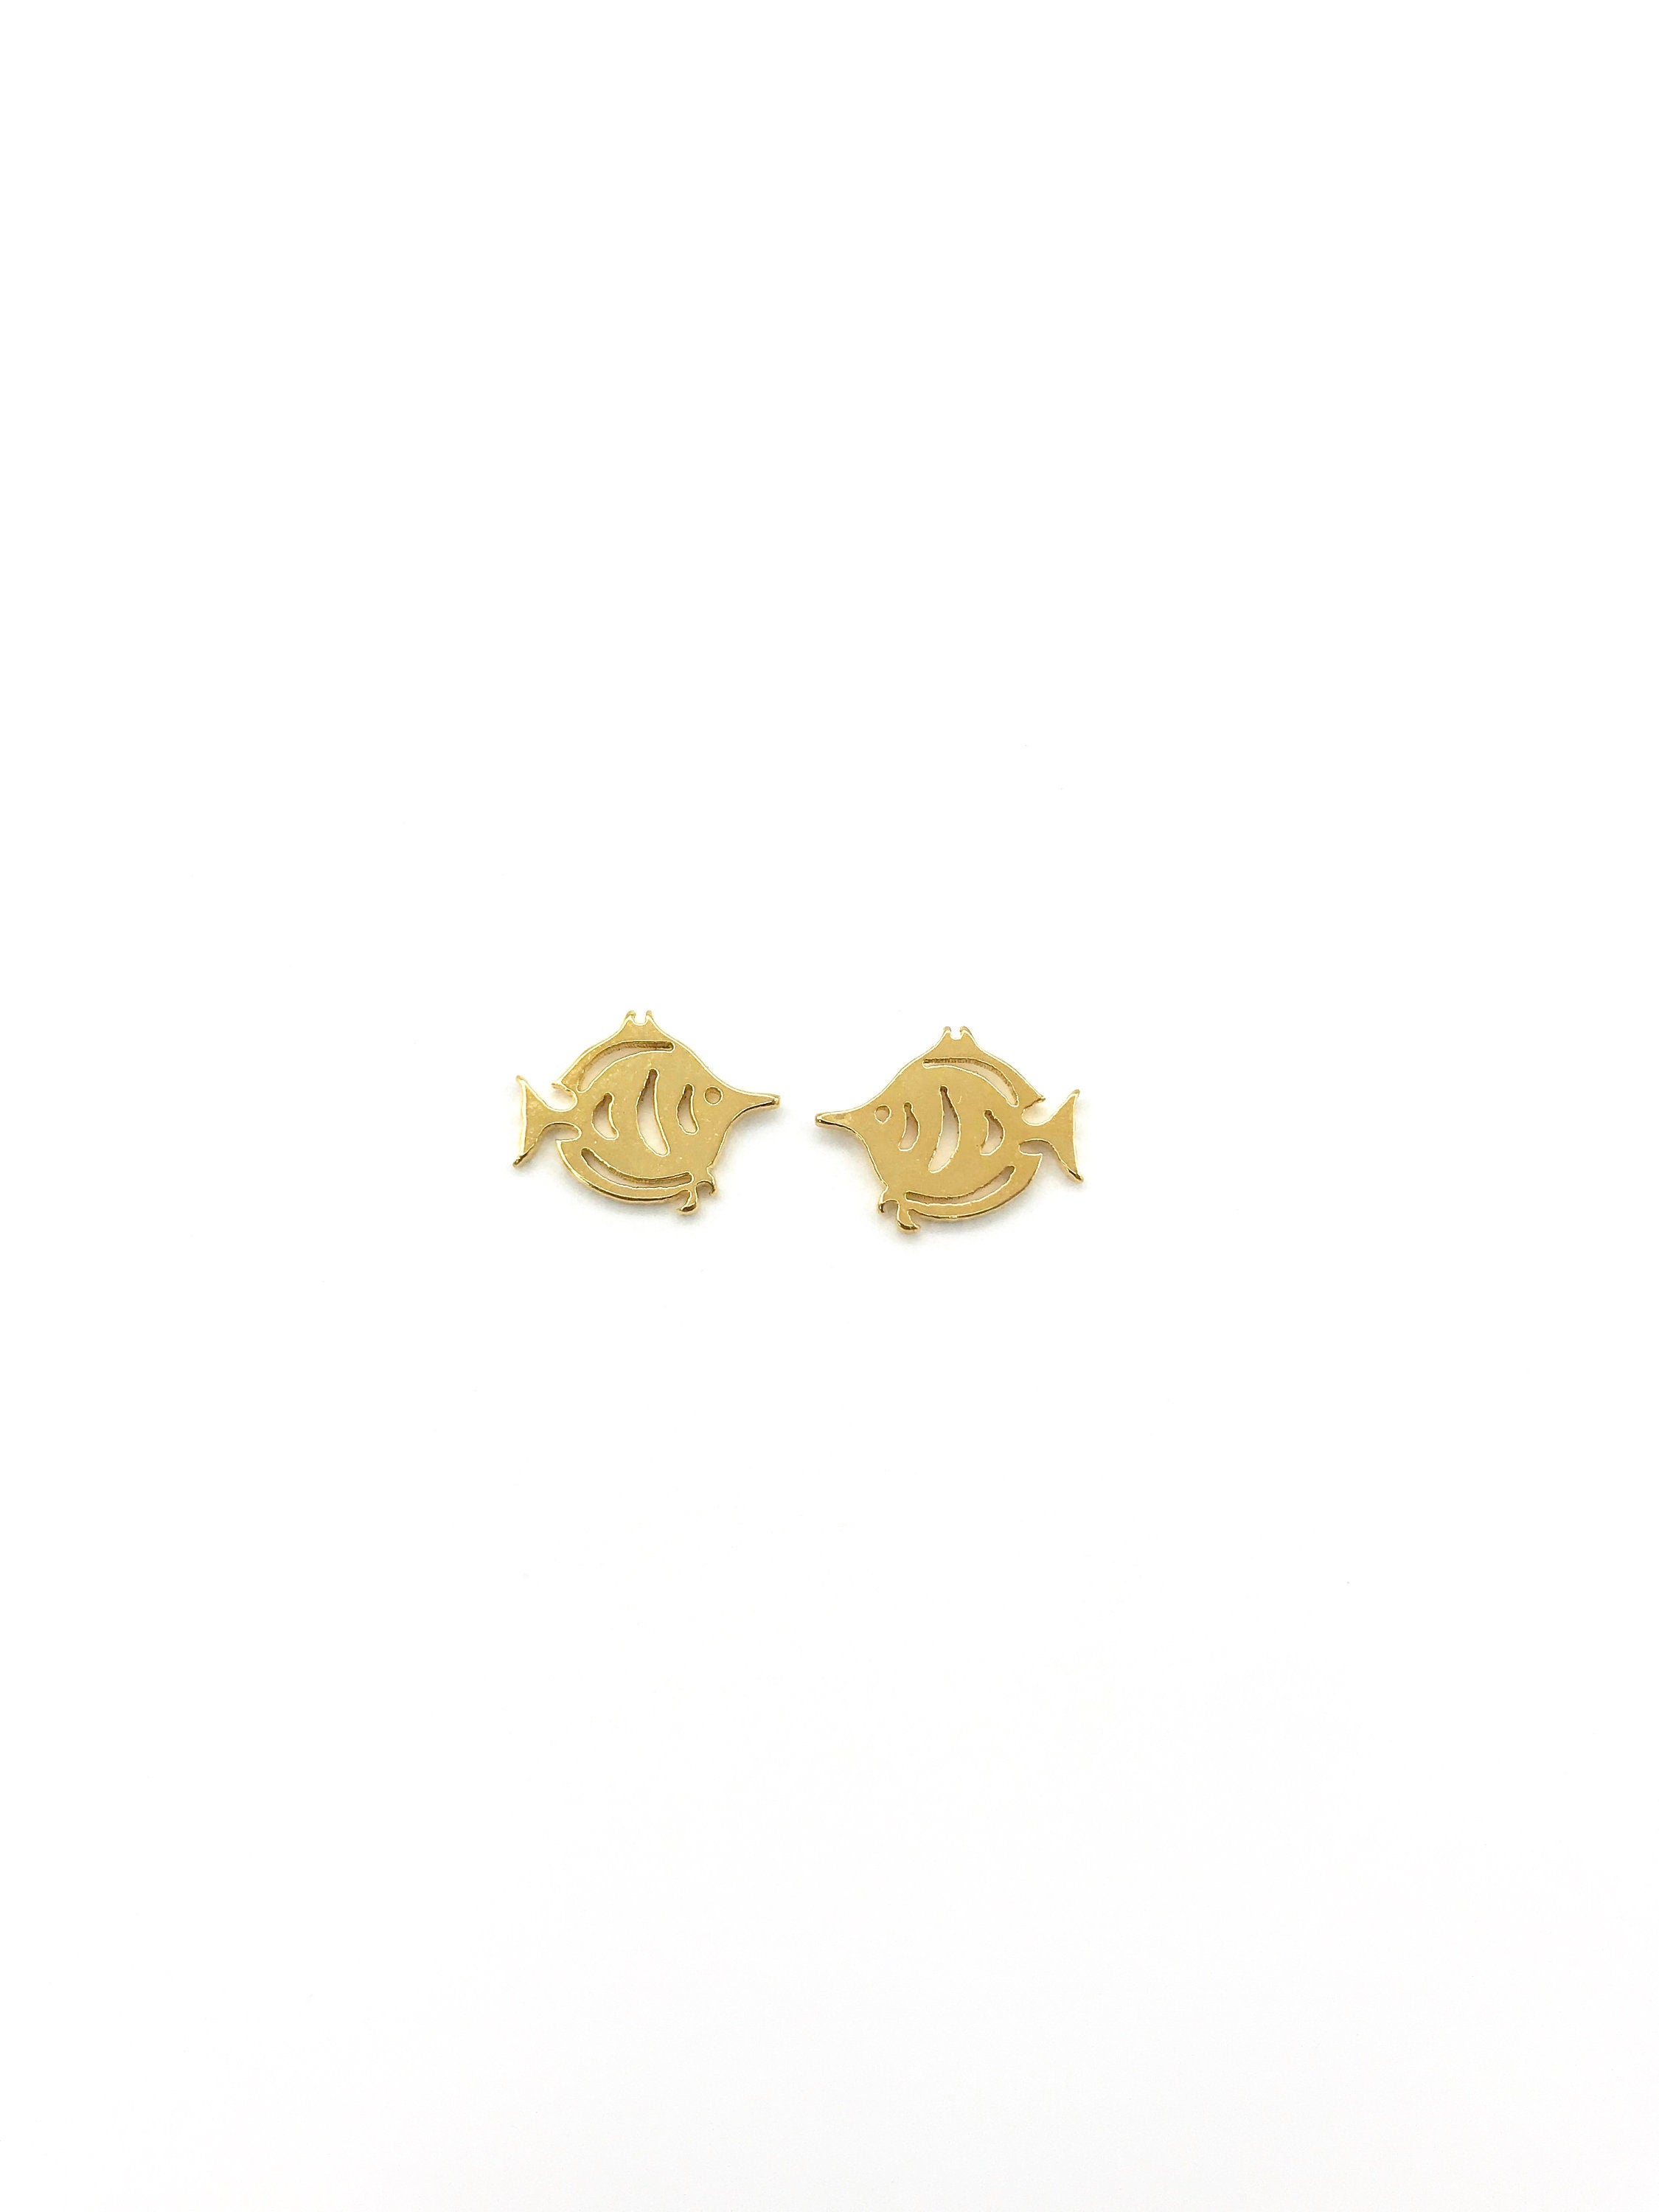 FISH EARRINGS !! Gold Earrings, cute earrings, Stud Earrings, earrings